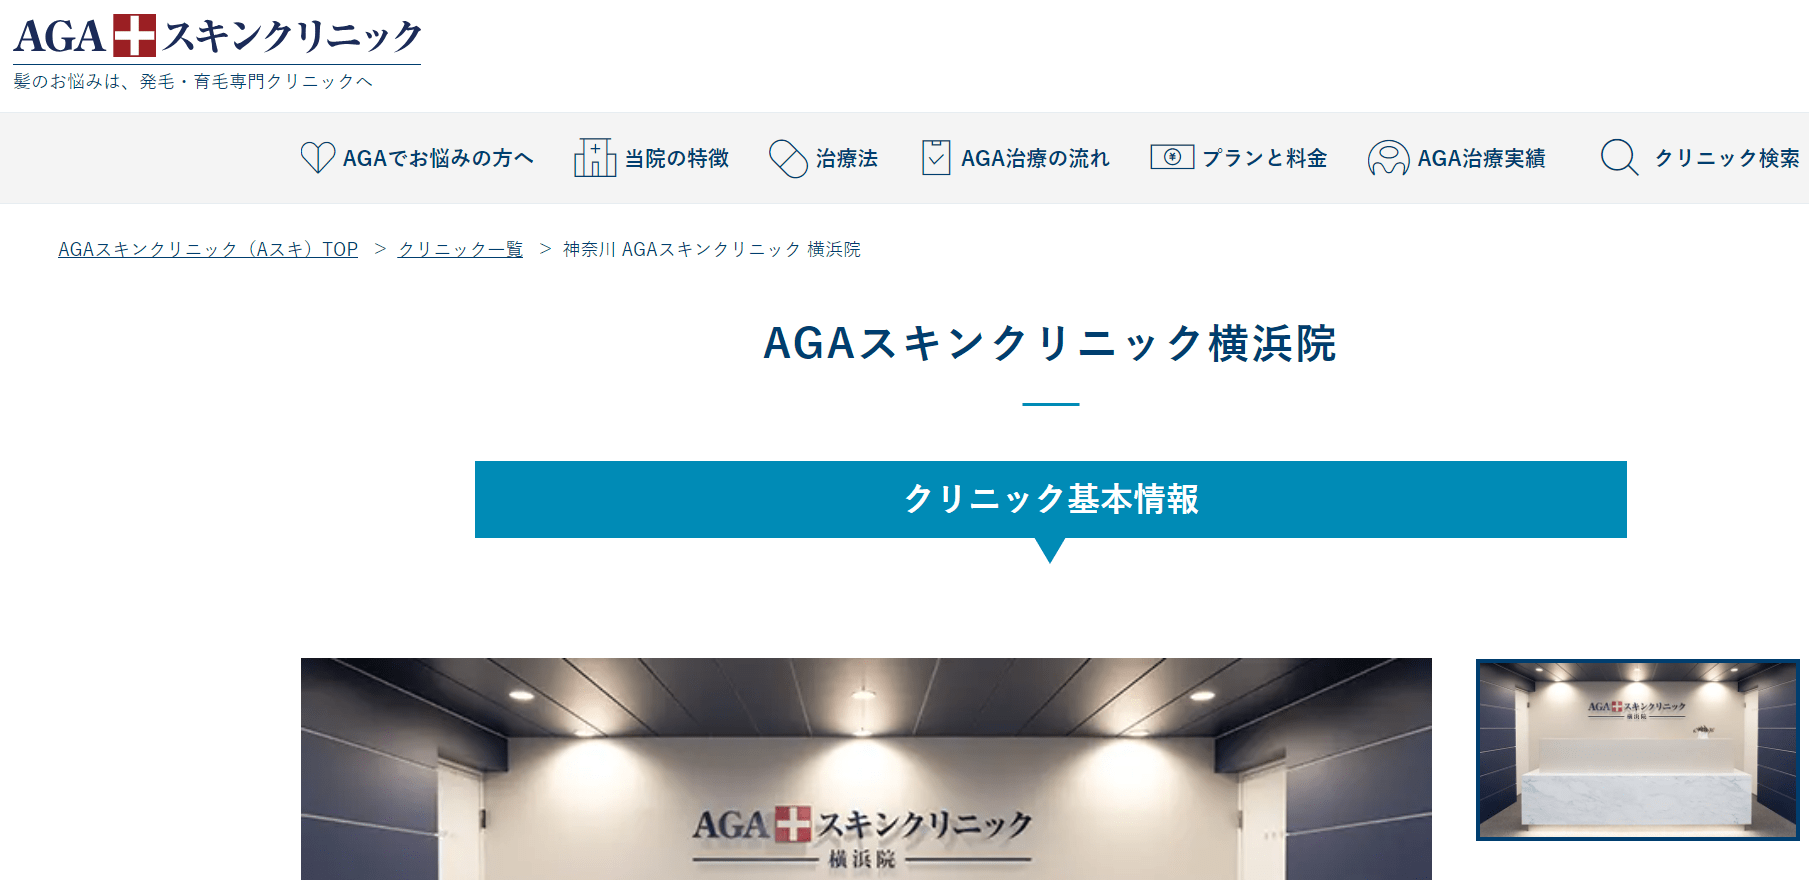 横浜市で評判のAGA治療におすすめのクリニック10選 AGAスキンクリニック 横浜院